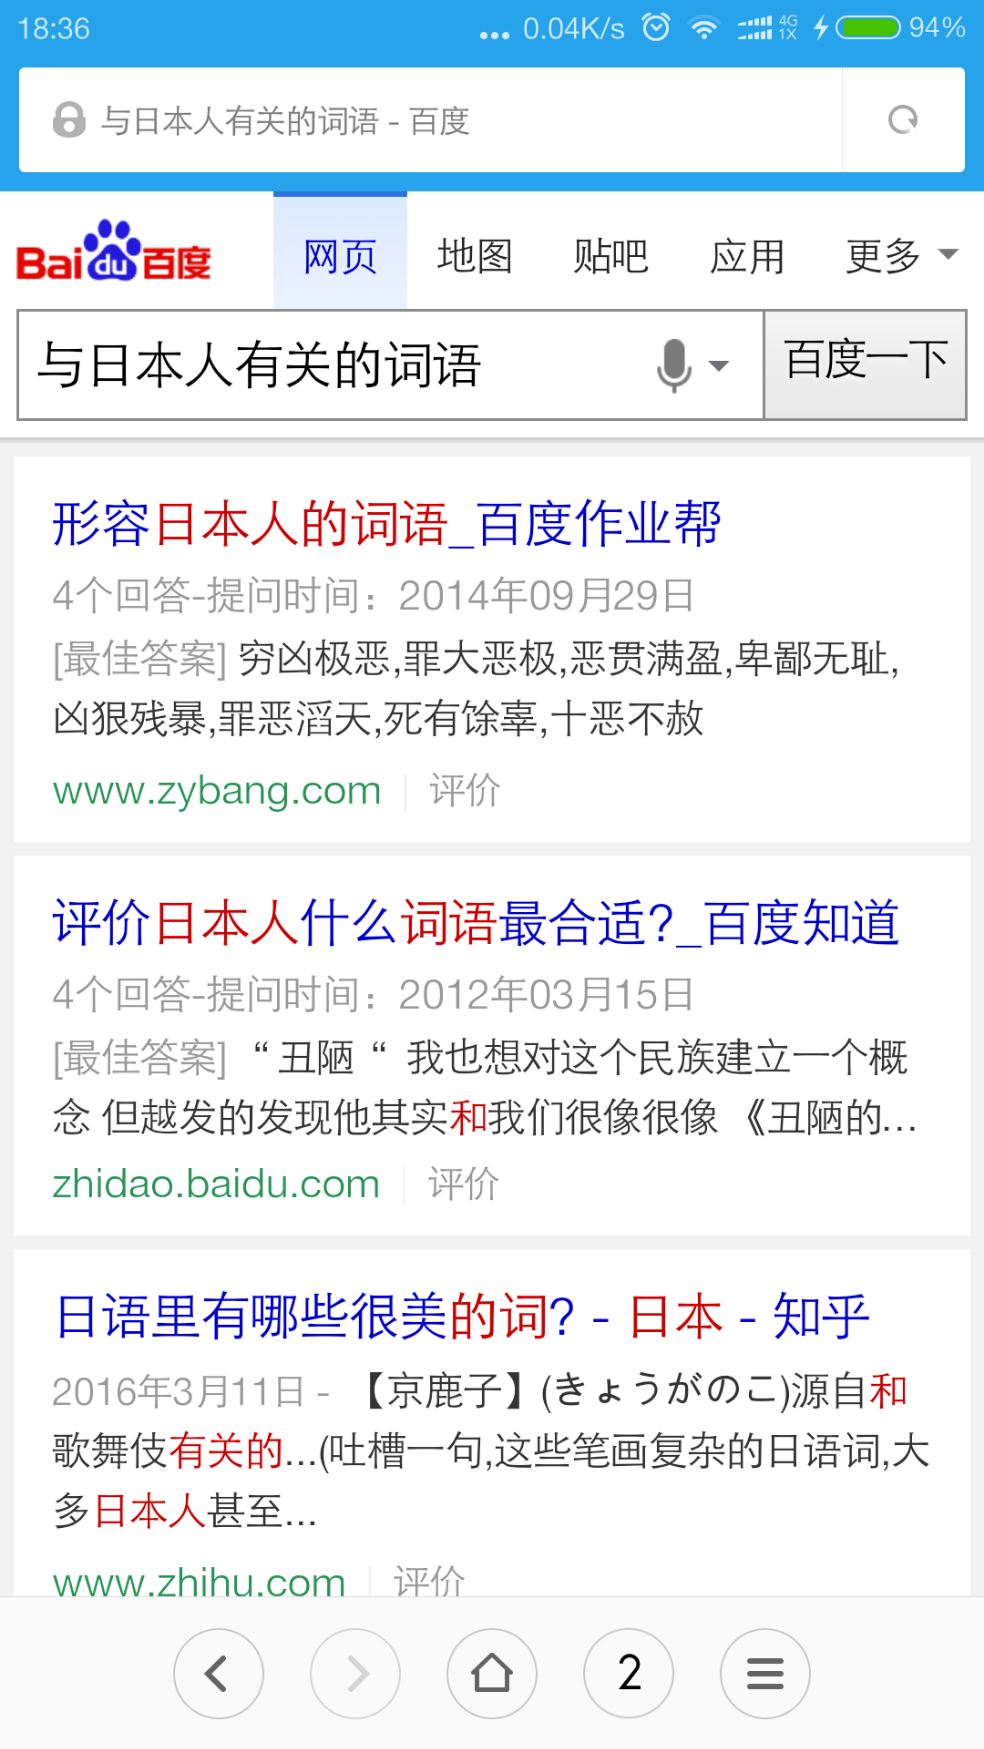 如何看待日本熊本地震后,中国部分网民在新闻